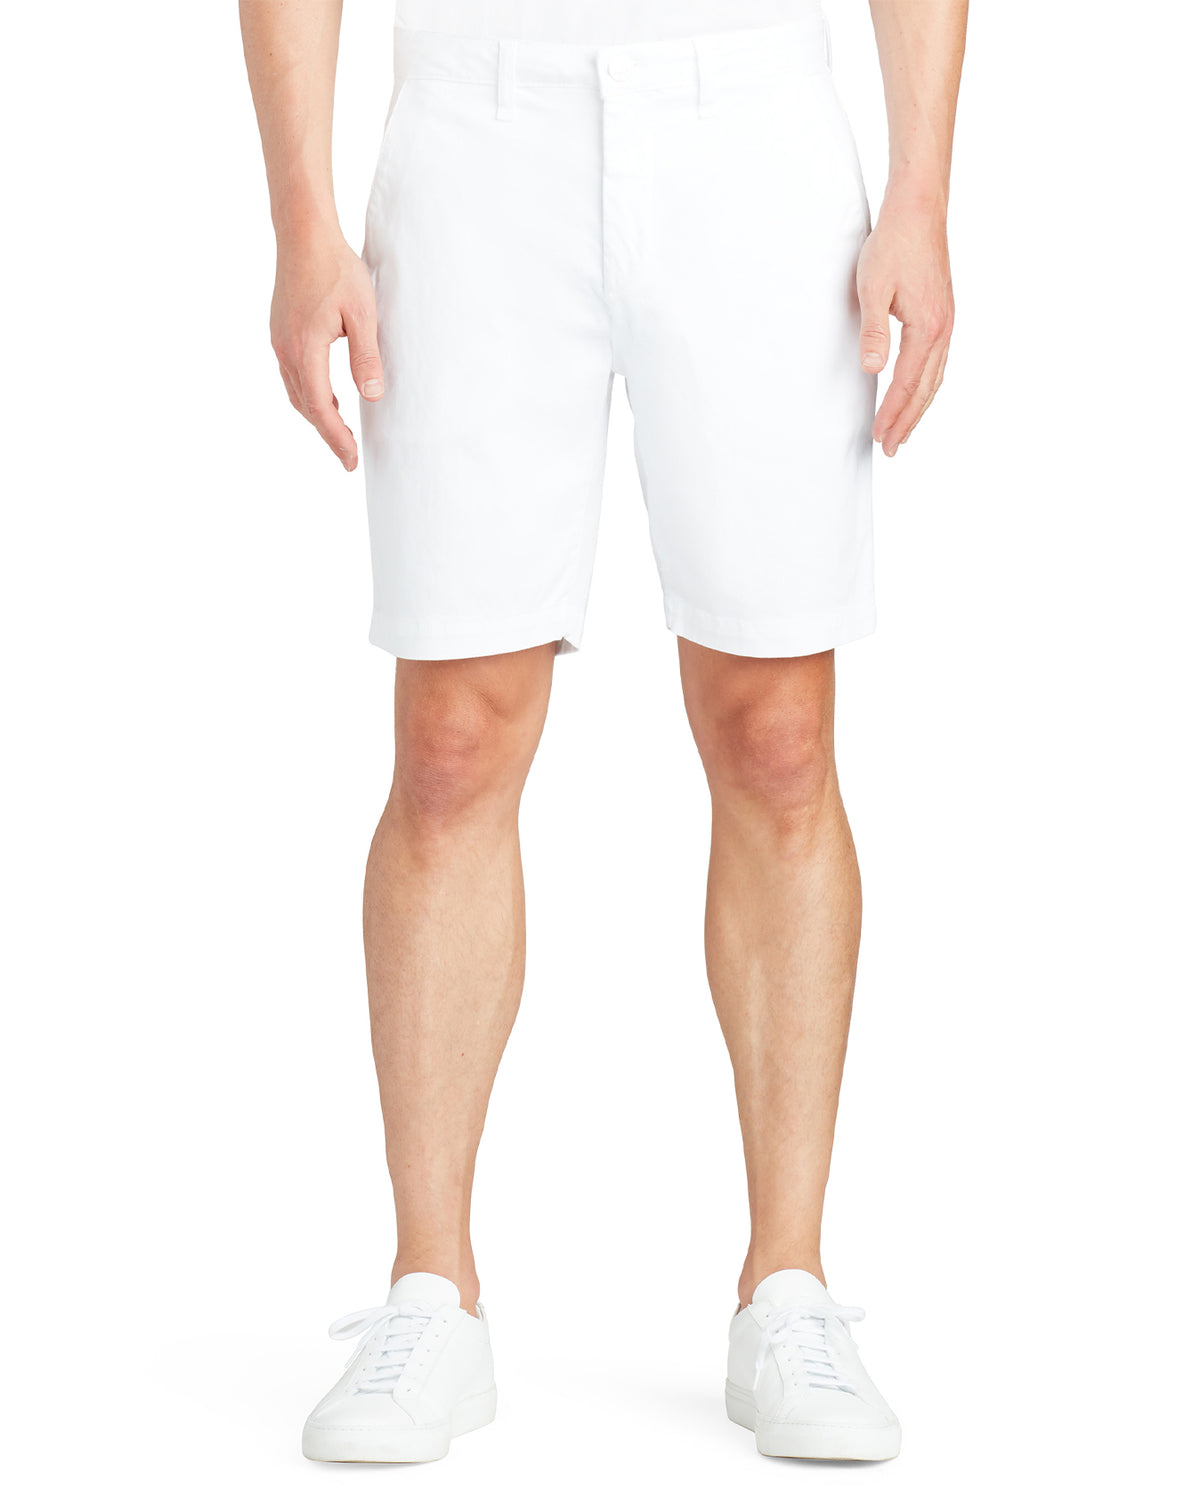 Cruise Optic White Shorts